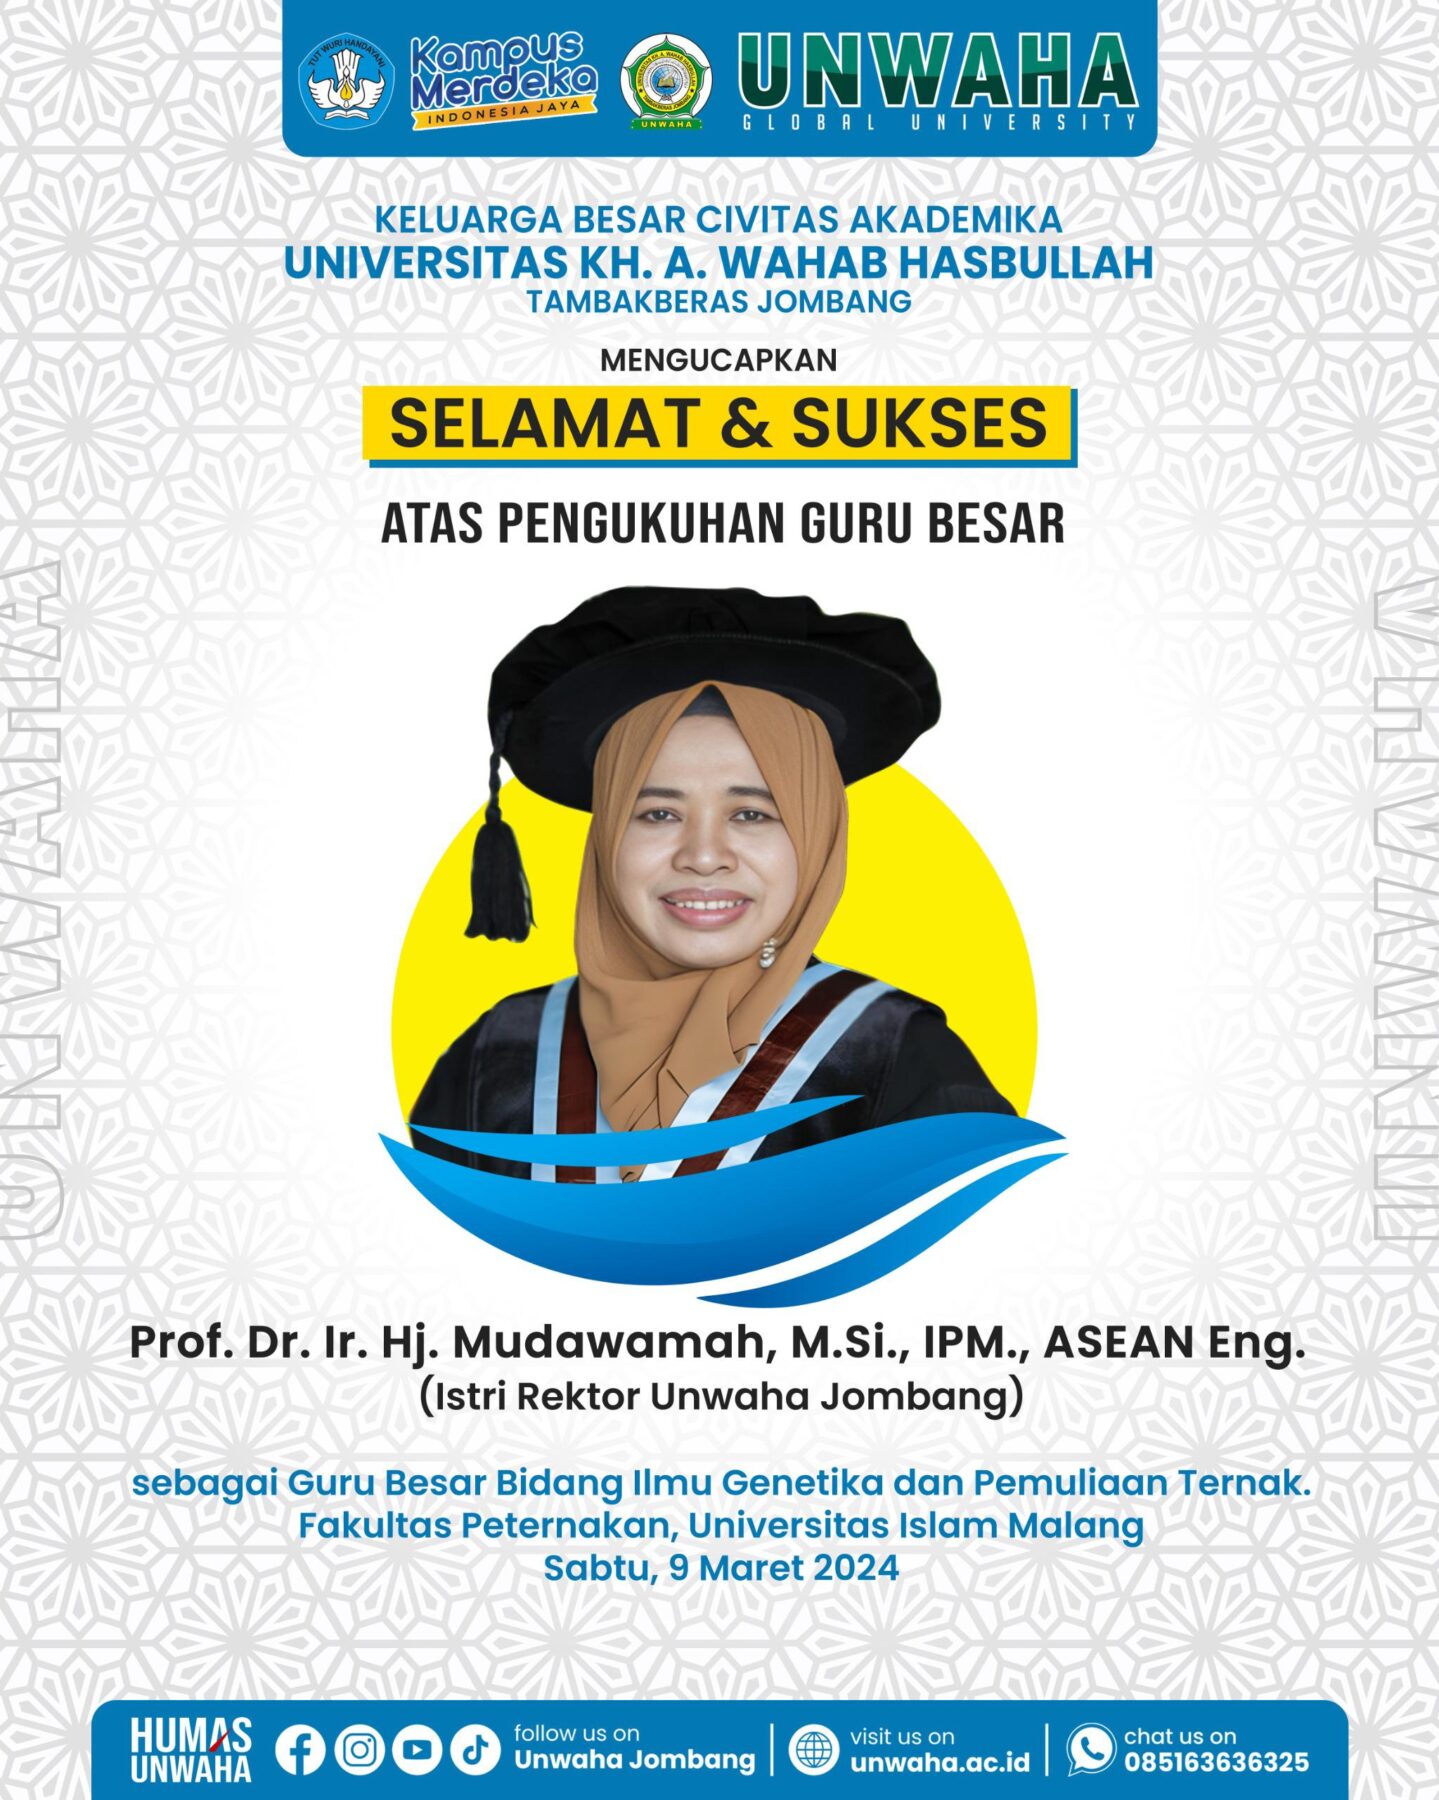 SELAMAT..!!! Prof. Mudawamah Resmi Dikukuhkan Sebagai Guru Besar Fakultas Peternakan Unisma